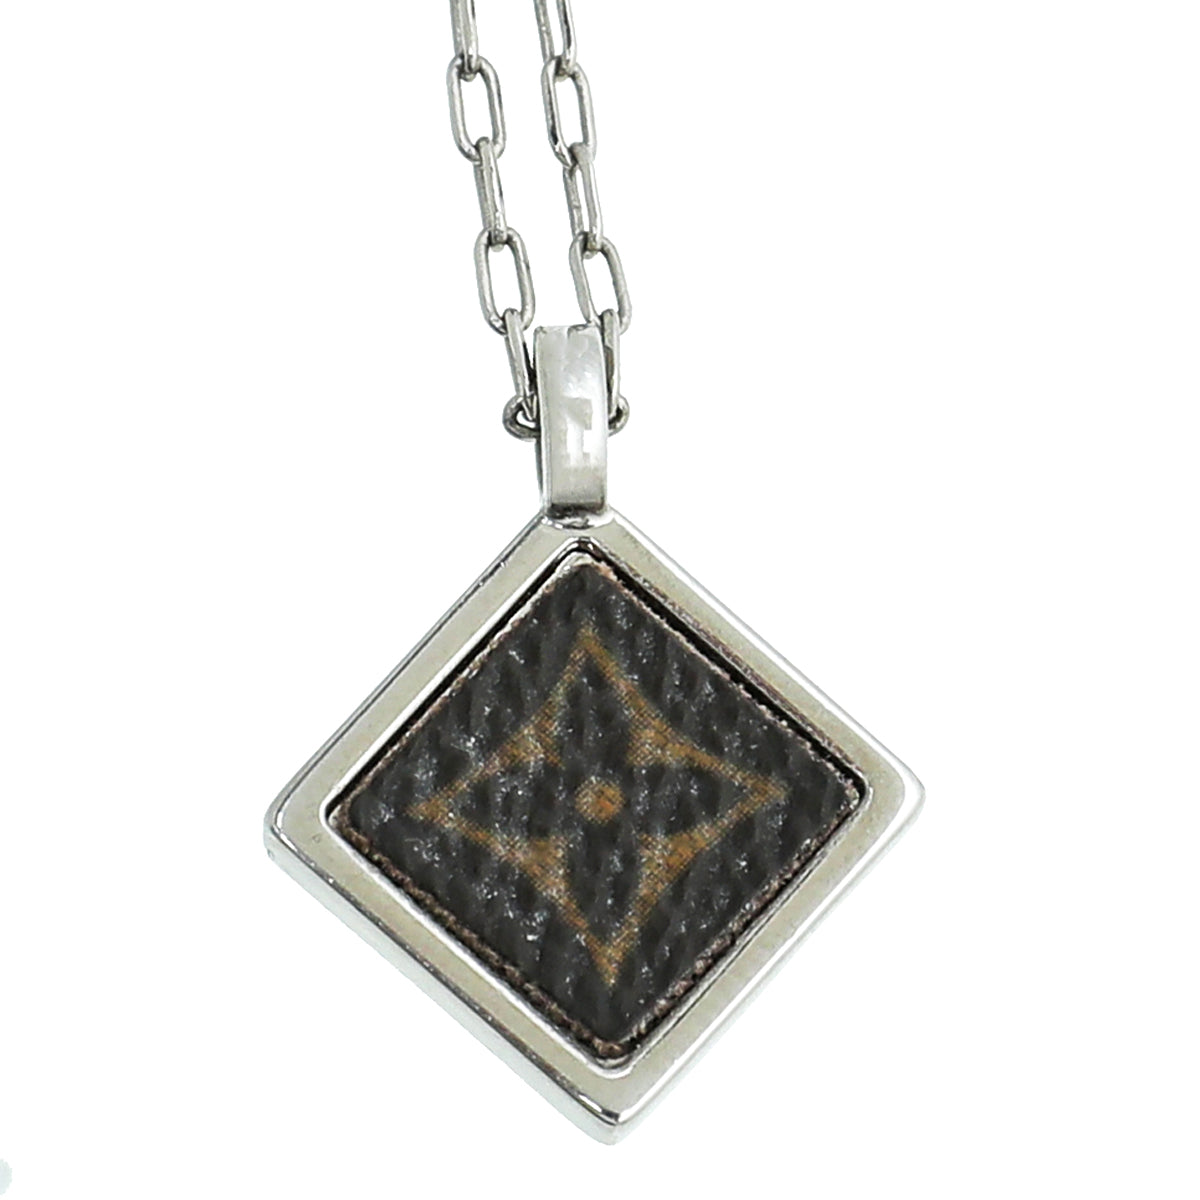 Louis Vuitton Silver Finish Monogram Square Pendant Necklace